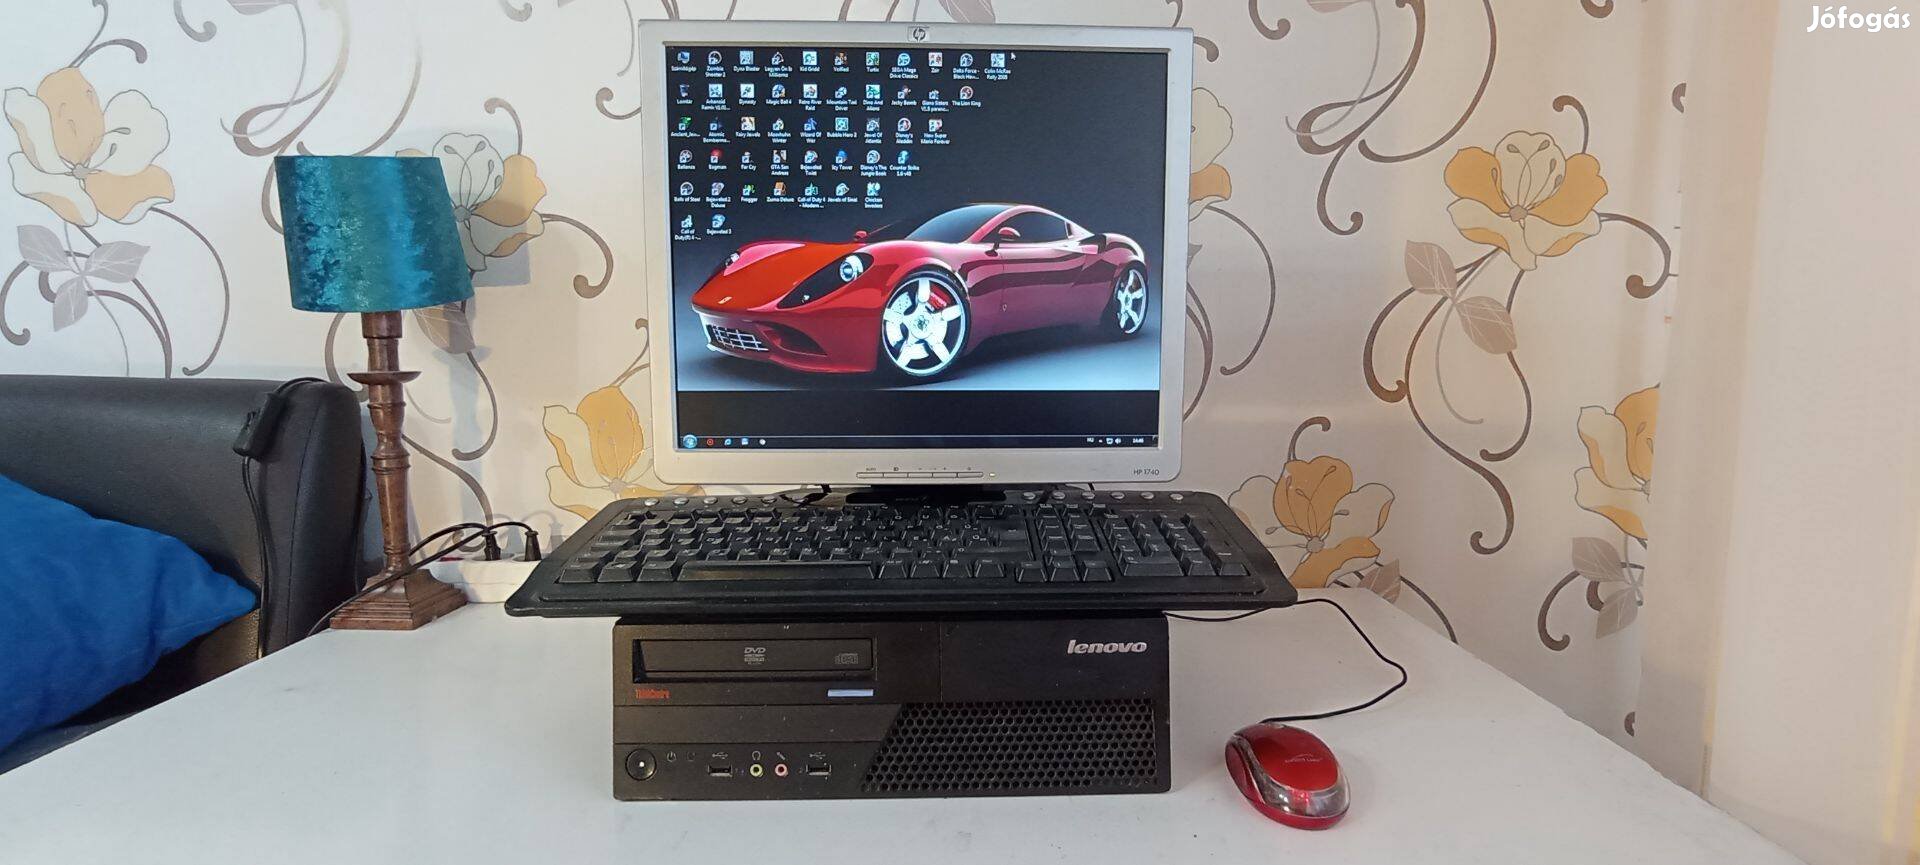 Komplett Lenovo számítógép monitorral, sok játékkal, olcsón eladó!